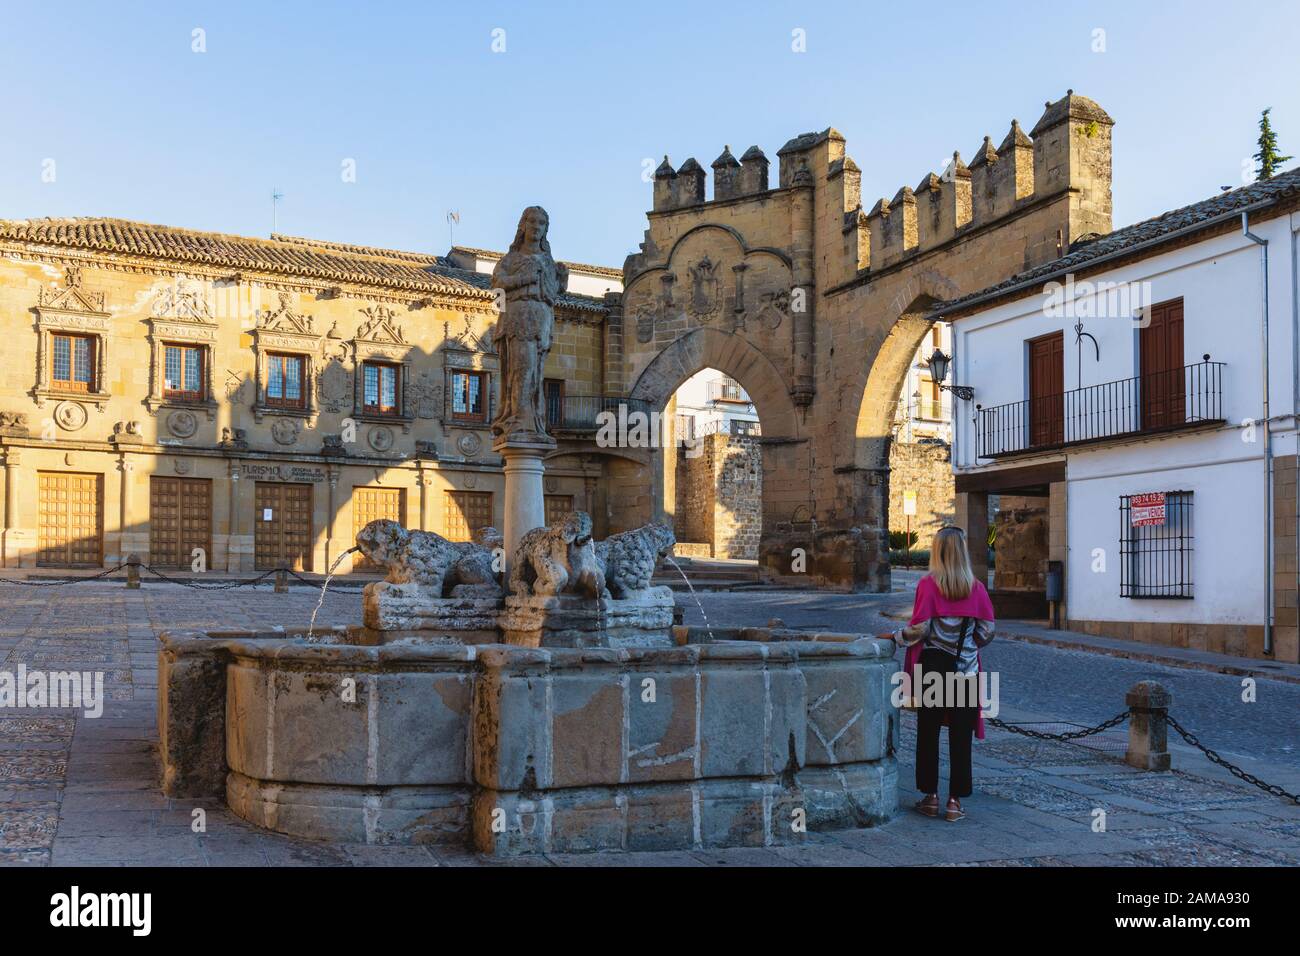 Fuente de los Leones, ou Fontaine des Lions, sur la Plaza del populo, Baeza, Jaen Province, Andalusia, Spain. La porte de ville d'ornement dans le dos Banque D'Images